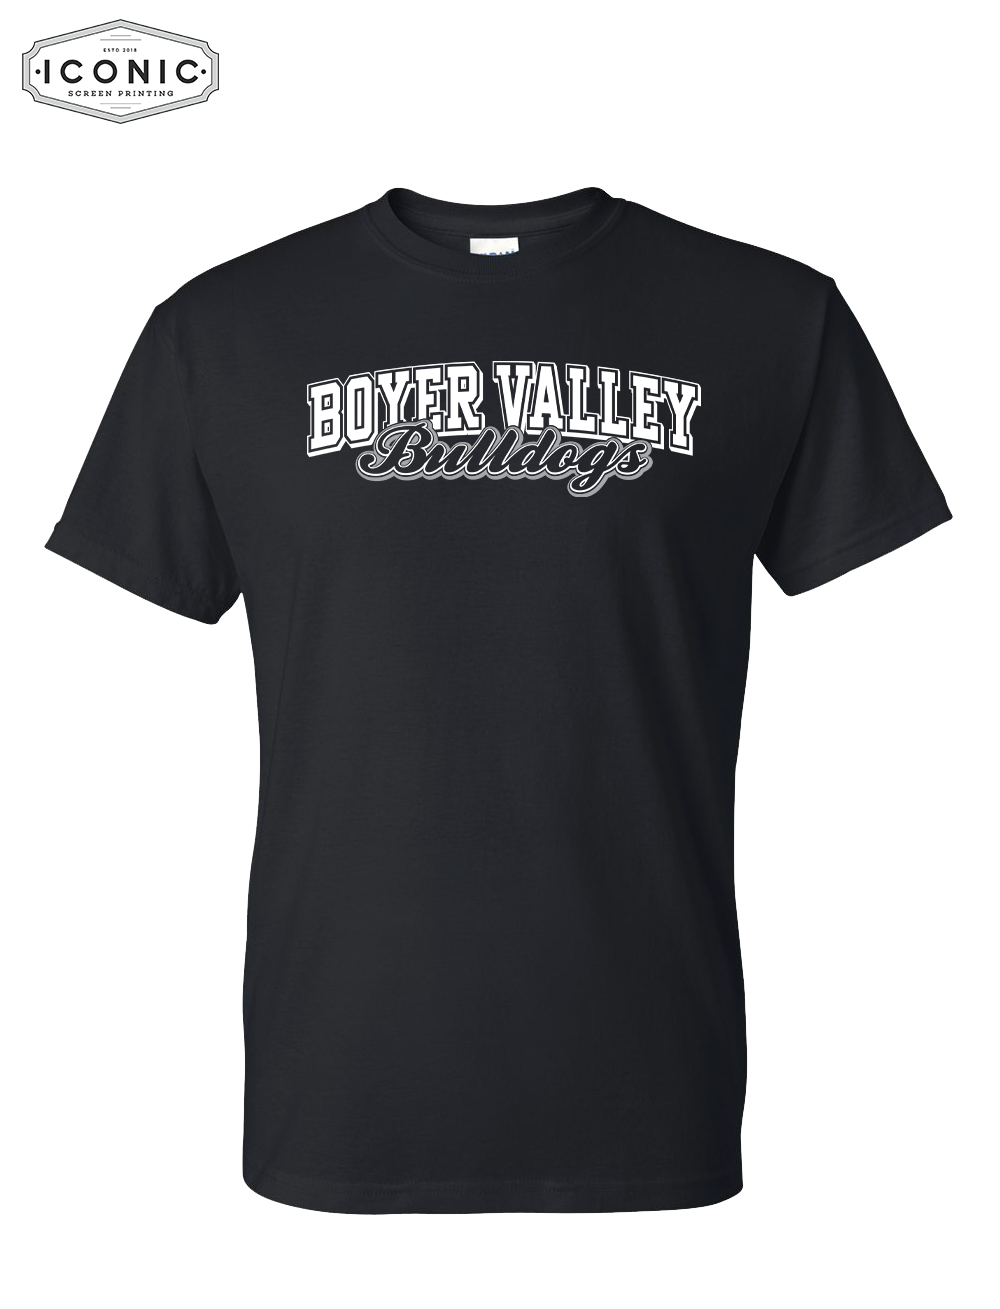 BV Bulldogs - DryBlend T-shirt